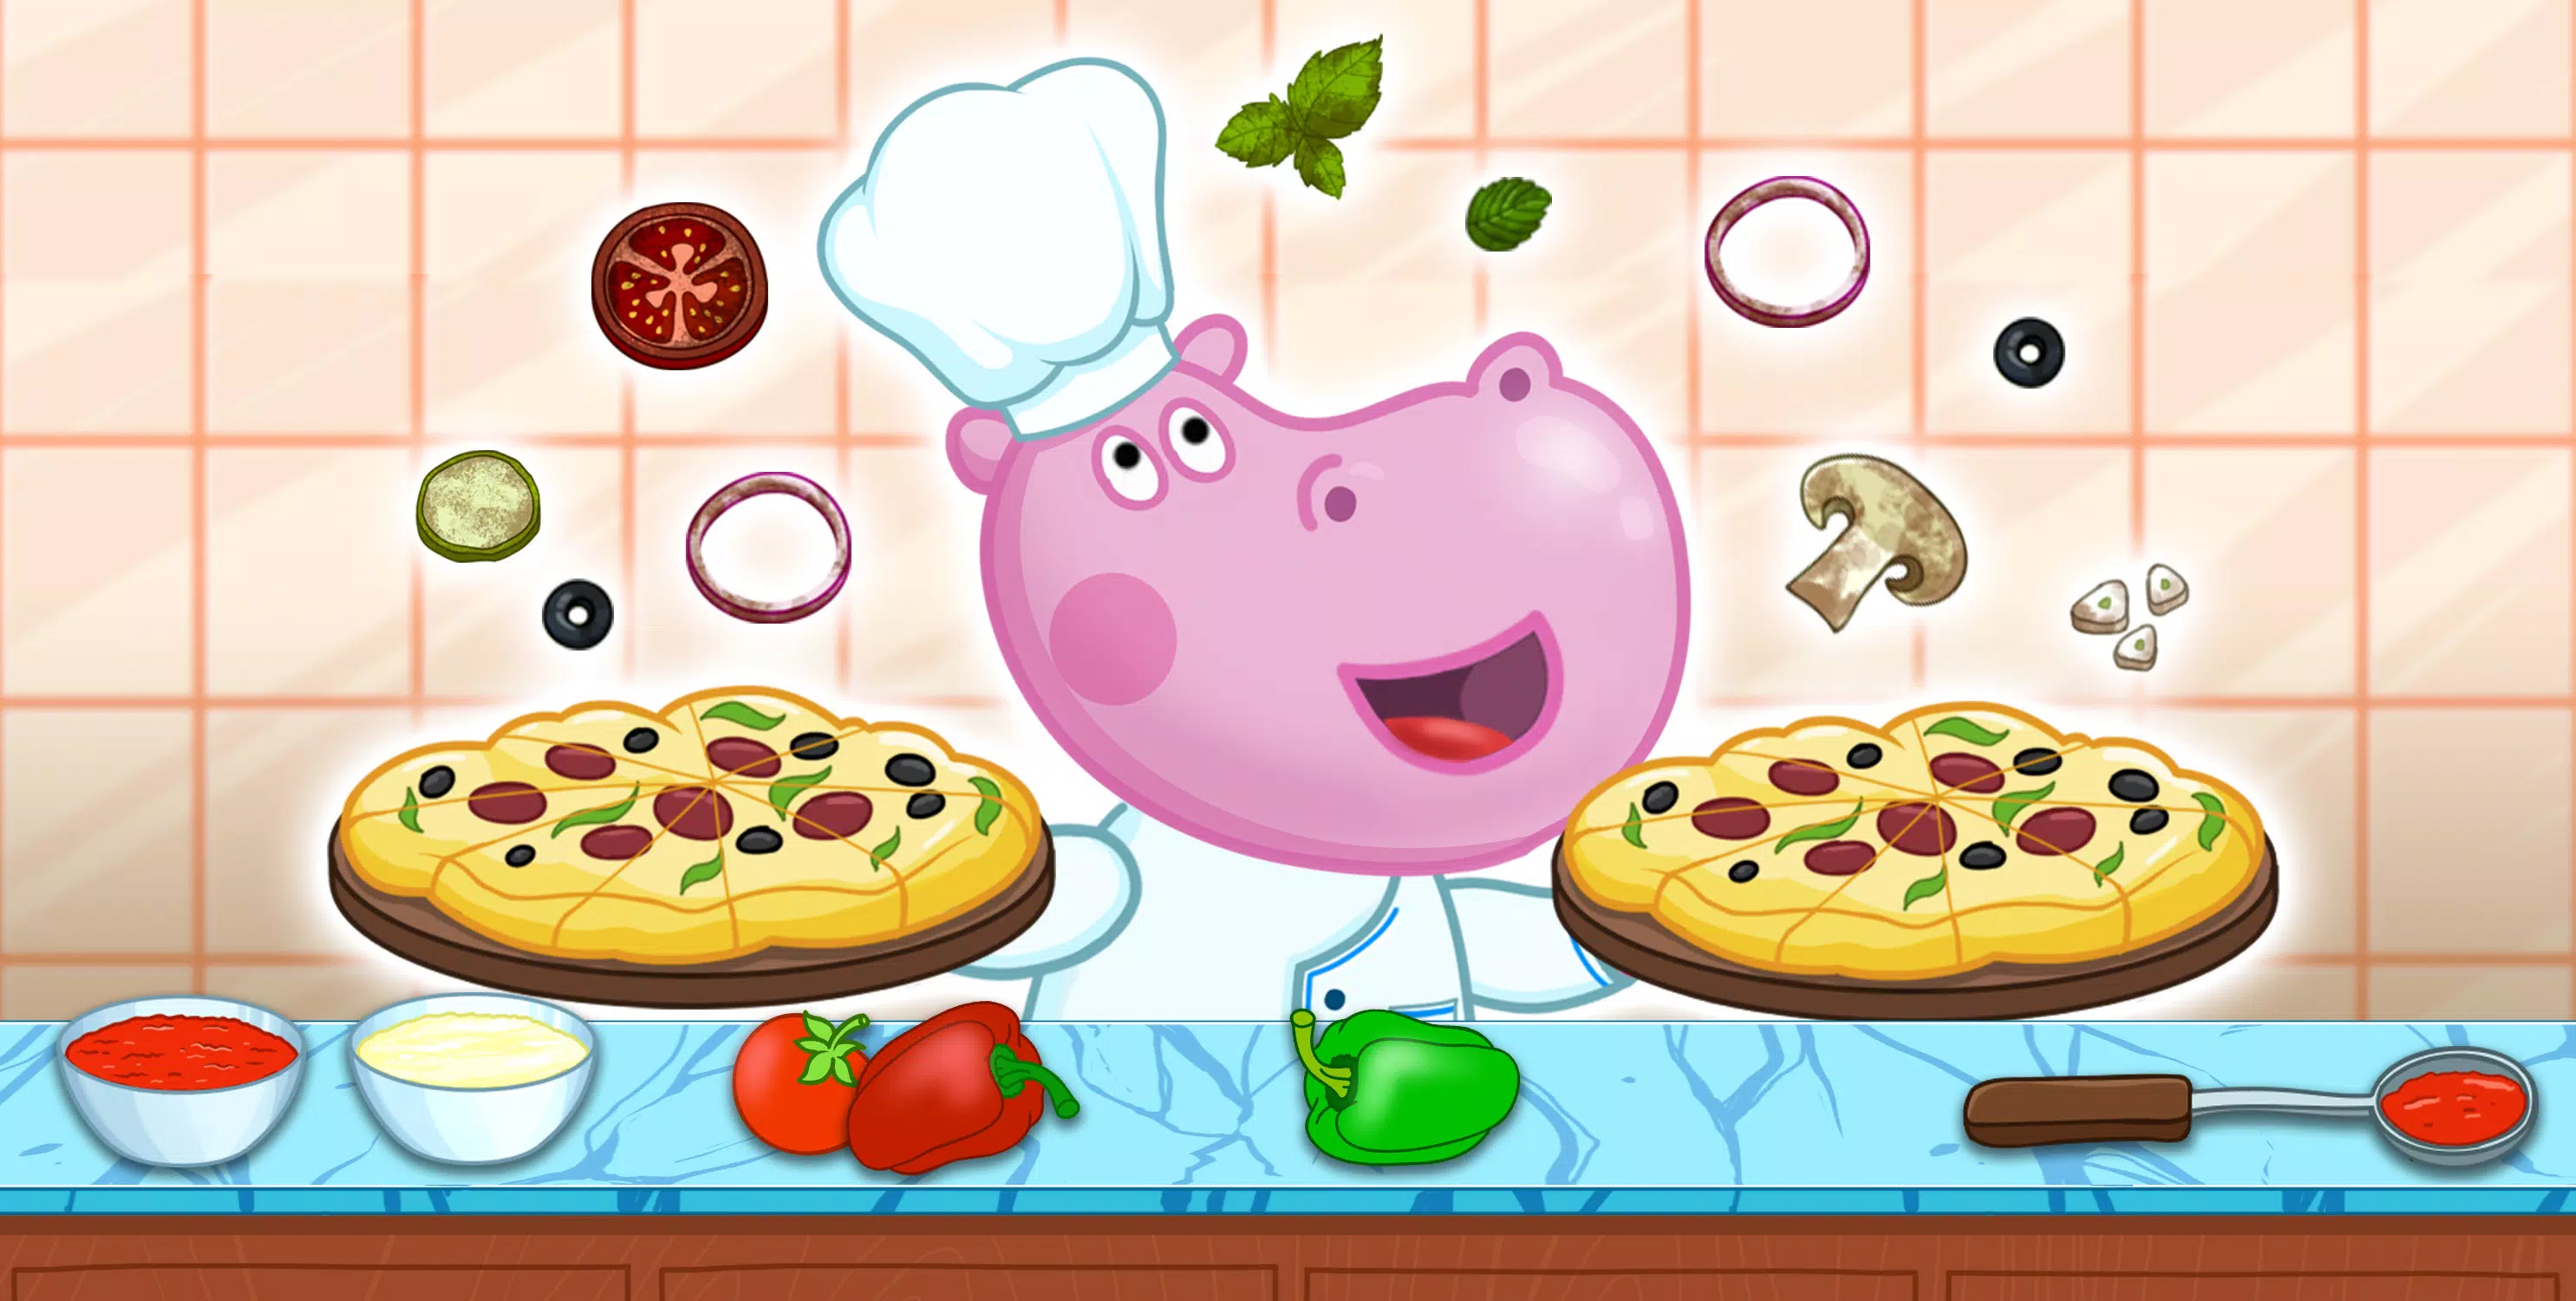 Download do APK de Pizza De Cozimento - Jogo De C para Android